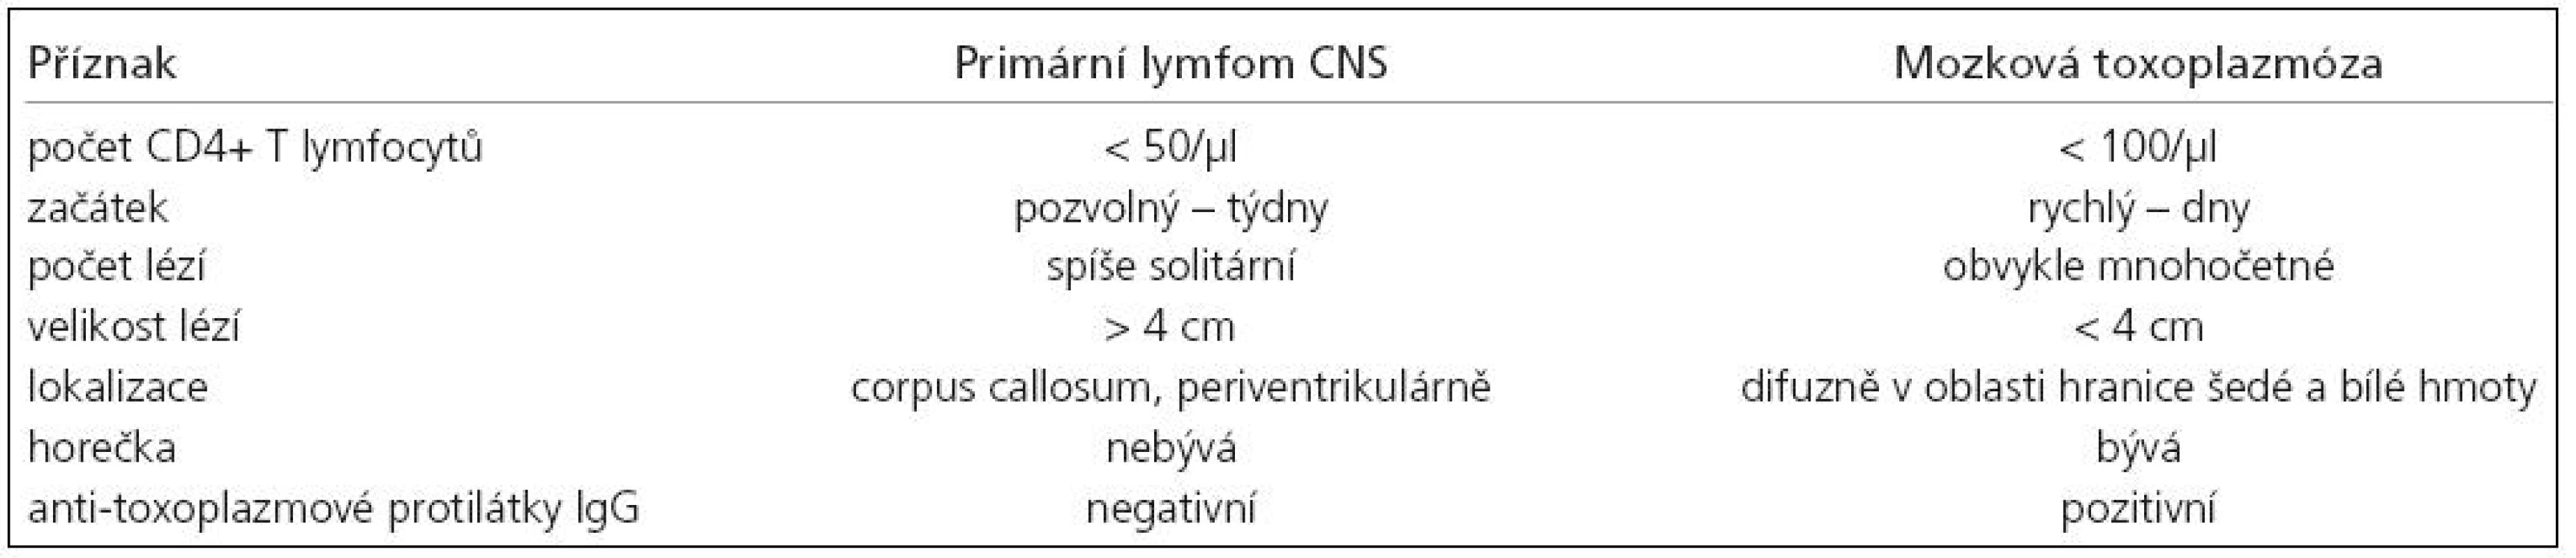 Diferenciální diagnóza mezi primárním lymfomem CNS a mozkovou toxoplazmózou.